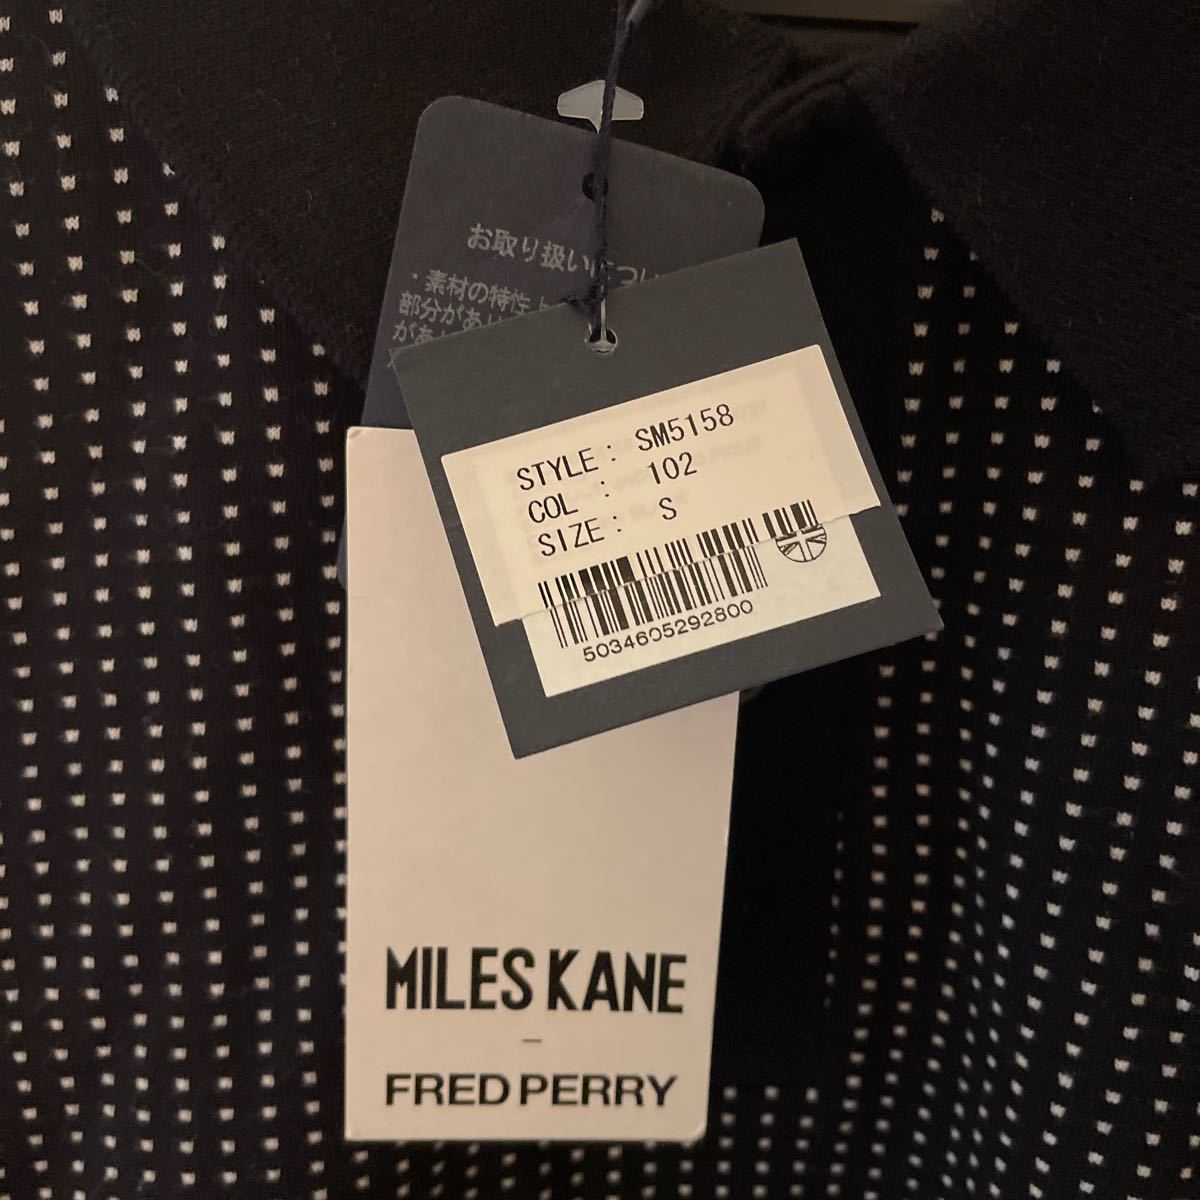 【未使用】FRED PERRY MILES KANE 半袖ポロシャツ SM5158 値下げご相談ください